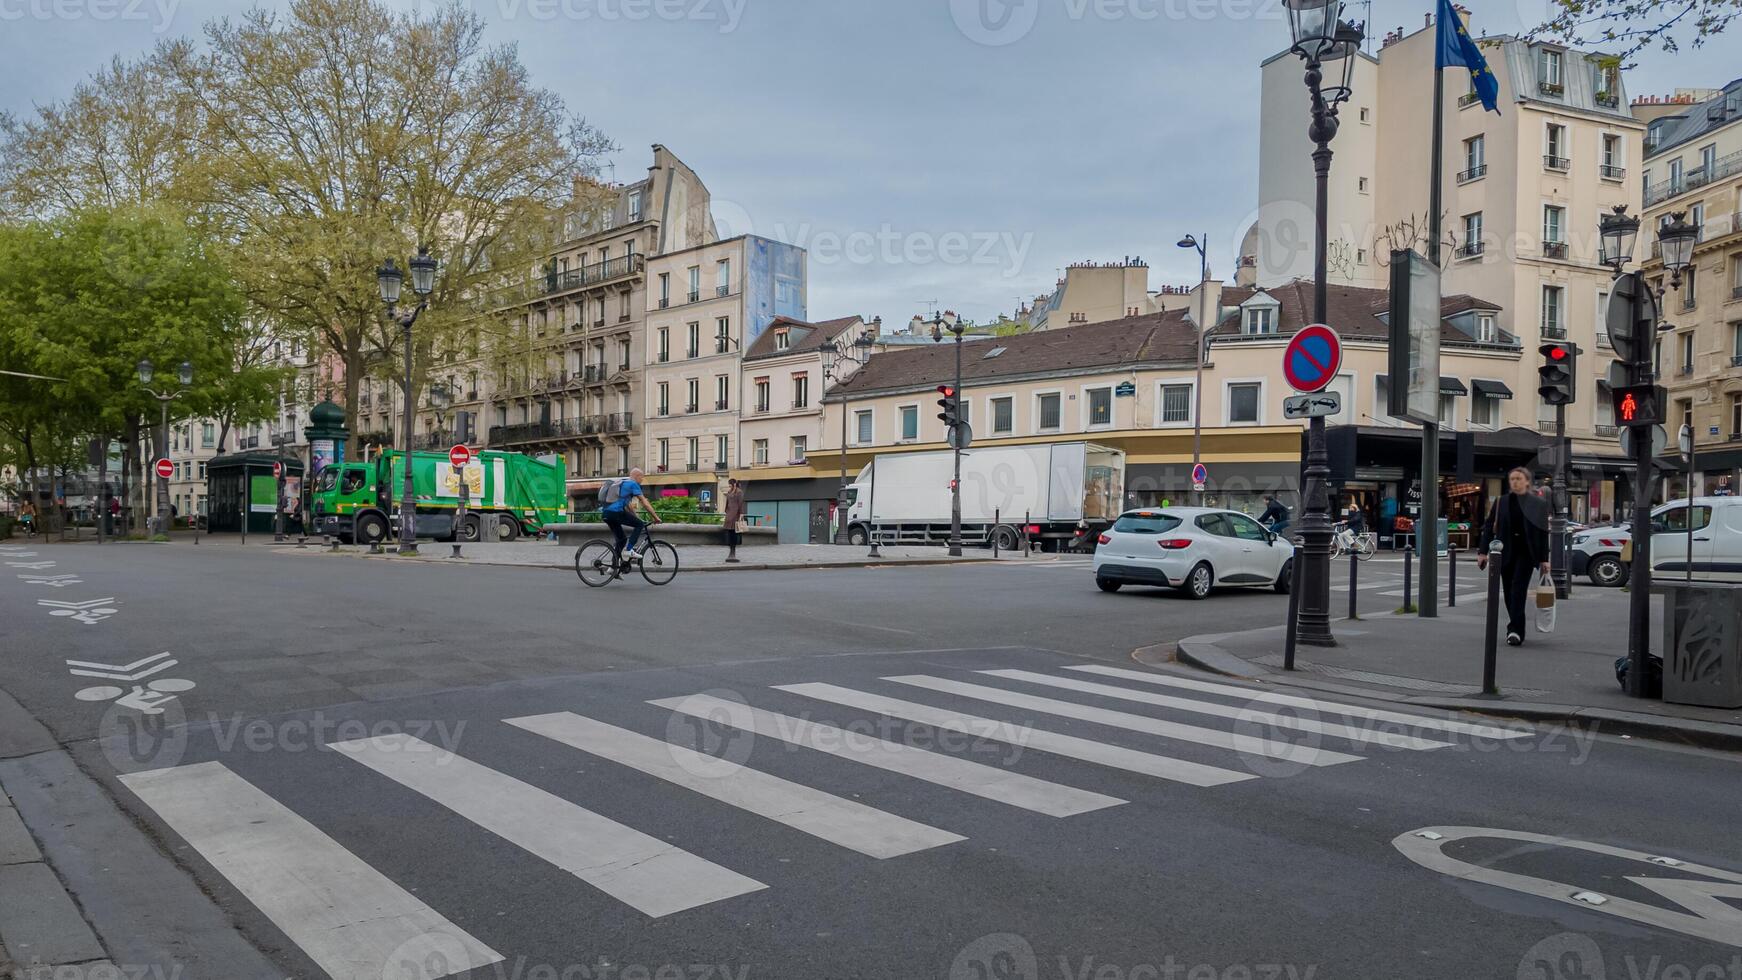 tyst stad gata scen i paris med en cyklist korsning och fordon, fångande varje dag urban liv och hållbar transport, potentiellt användbar för resa eller miljö- teman foto